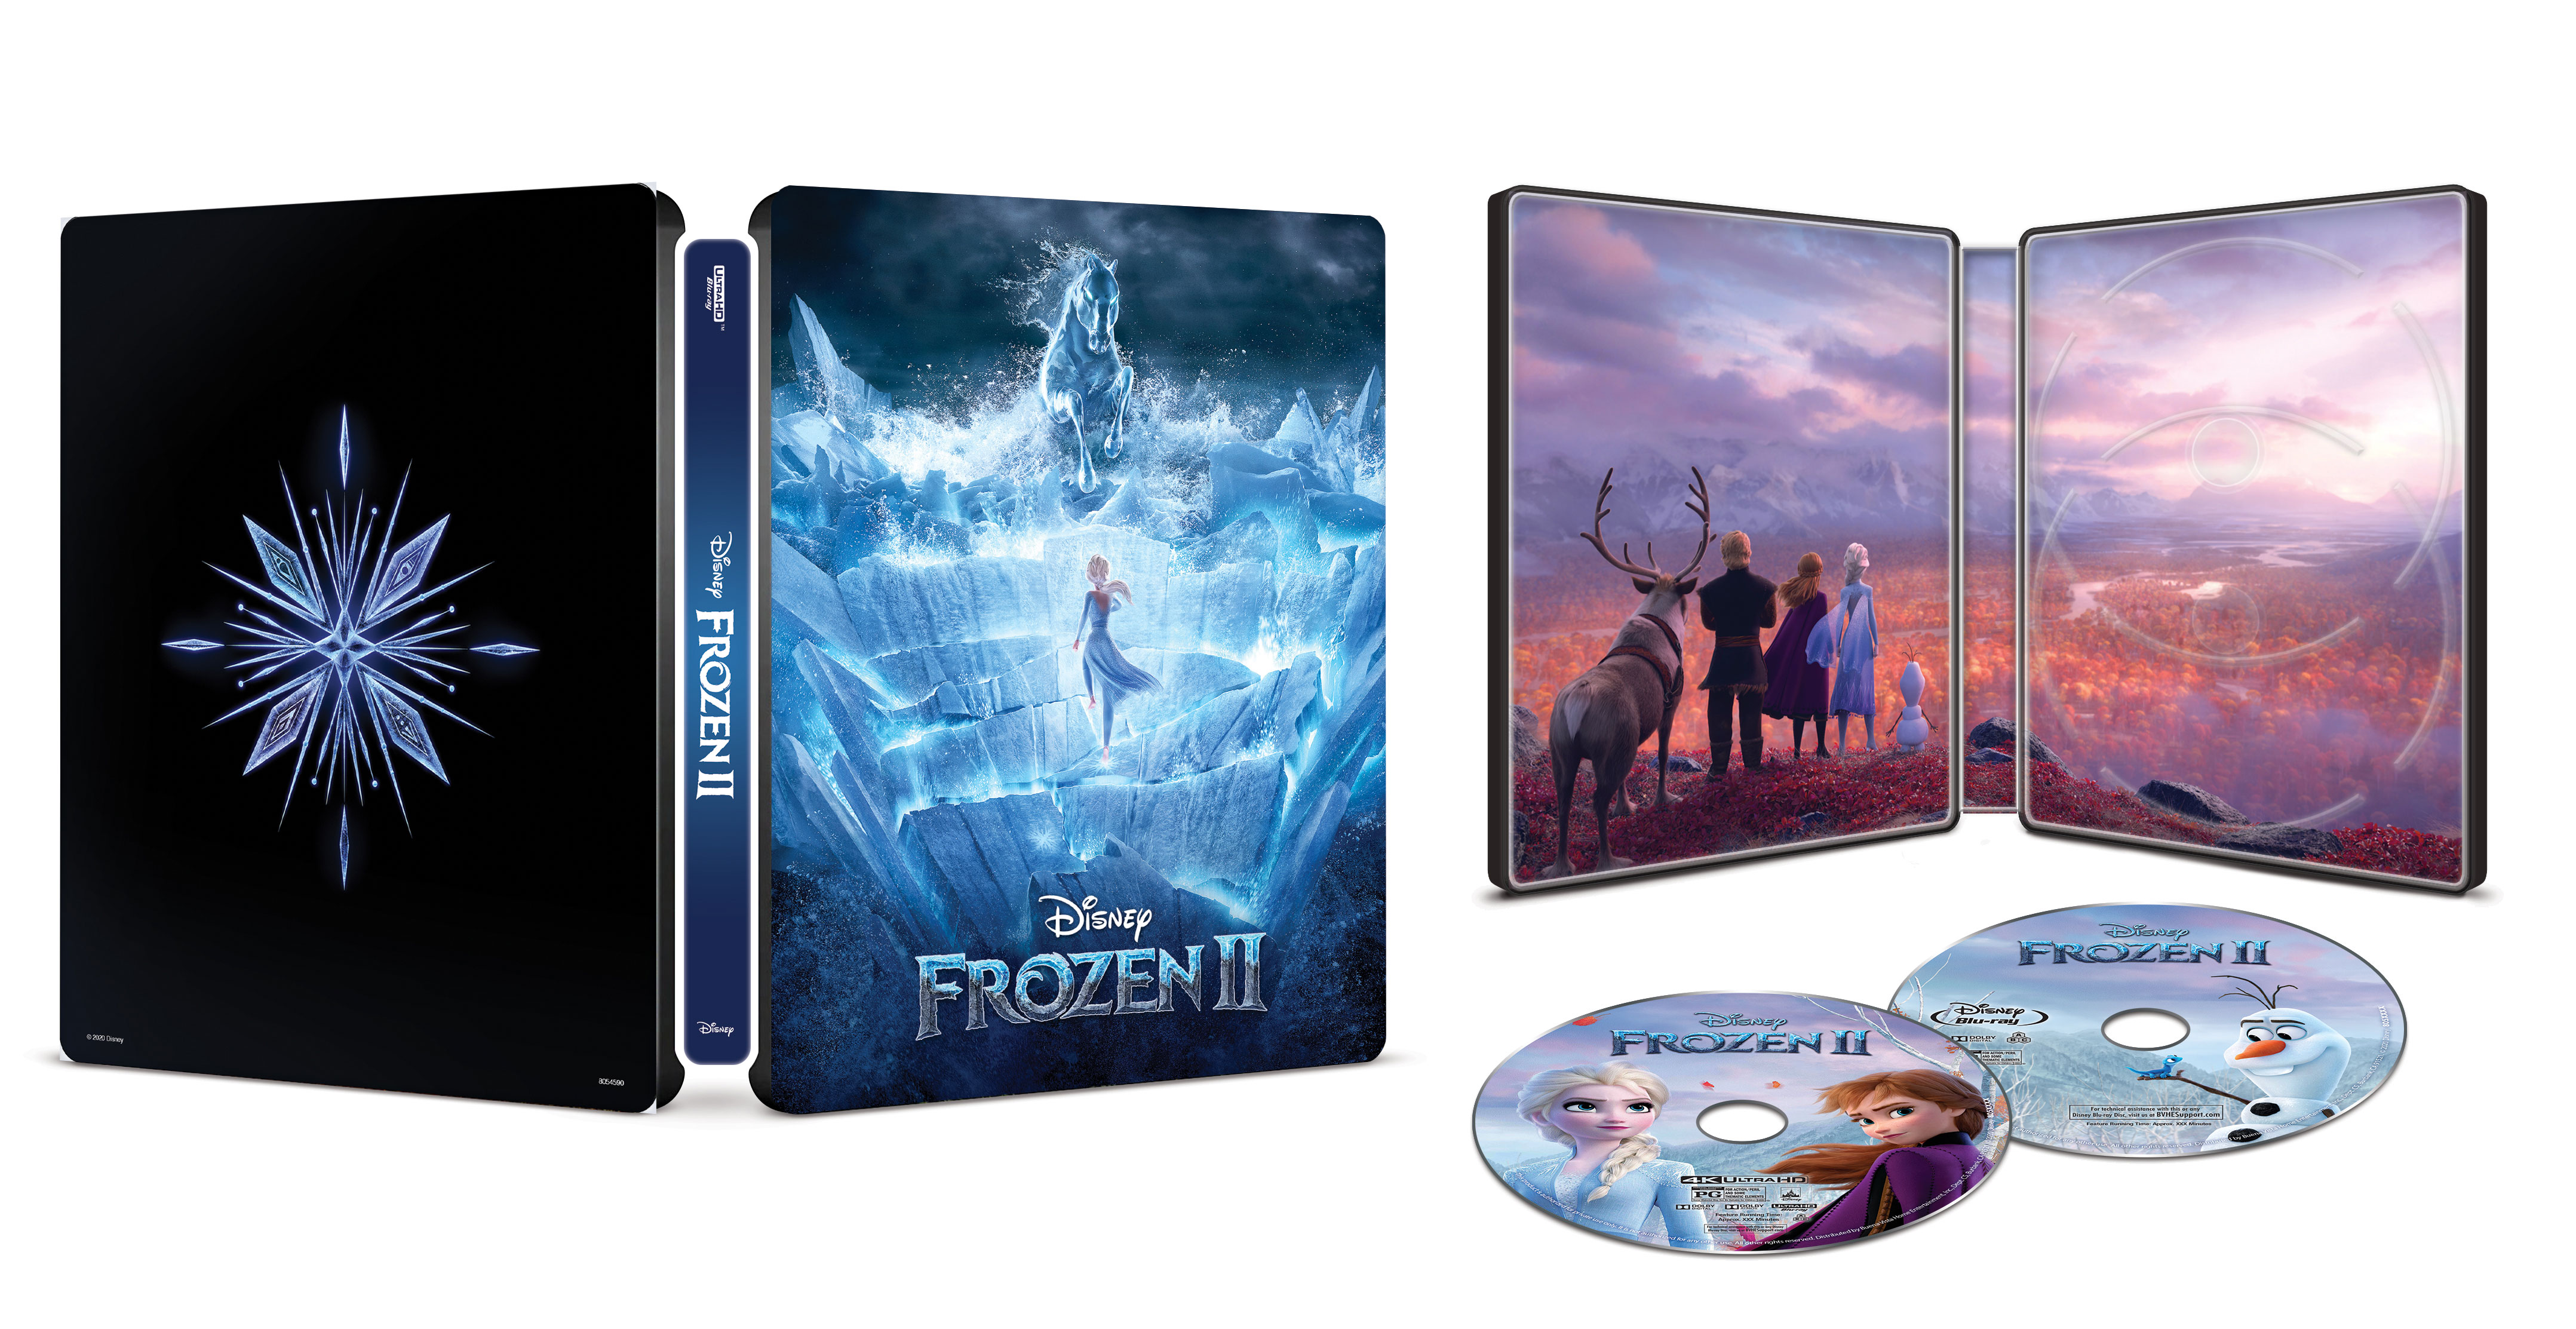 Frozen Ii Steelbook Includes Digital Copy 4k Ultra Hd Blu Ray Blu Ray Only Best Buy 19 Best Buy